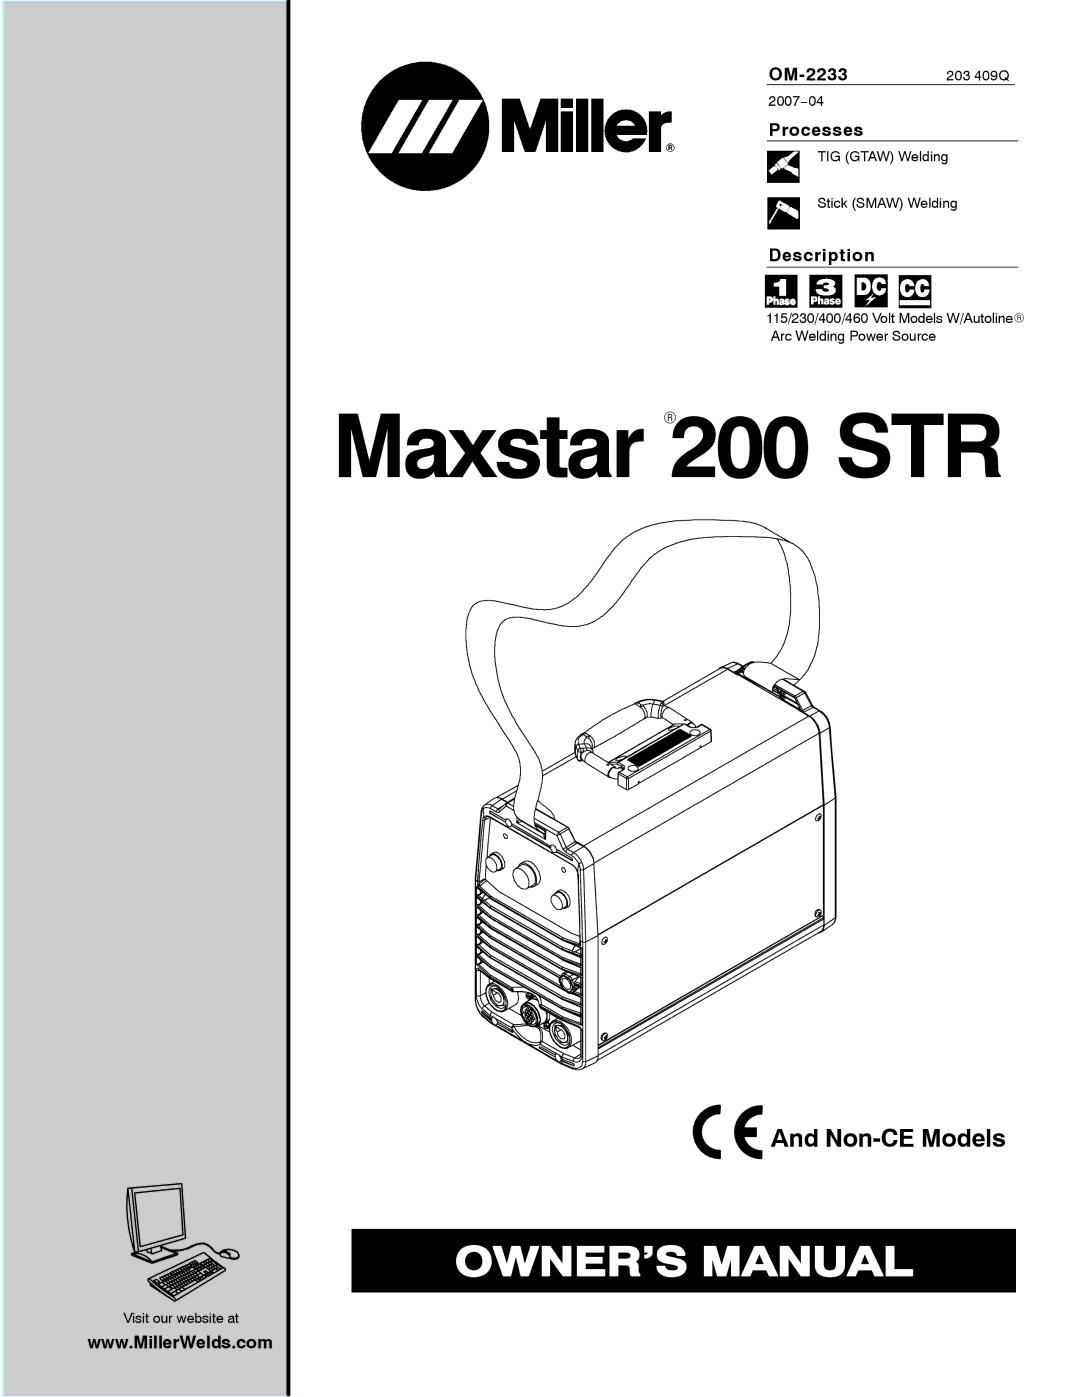 Miller Electric Maxstar 200 STR manual OM-2233 203 409Q, Processes, Description 